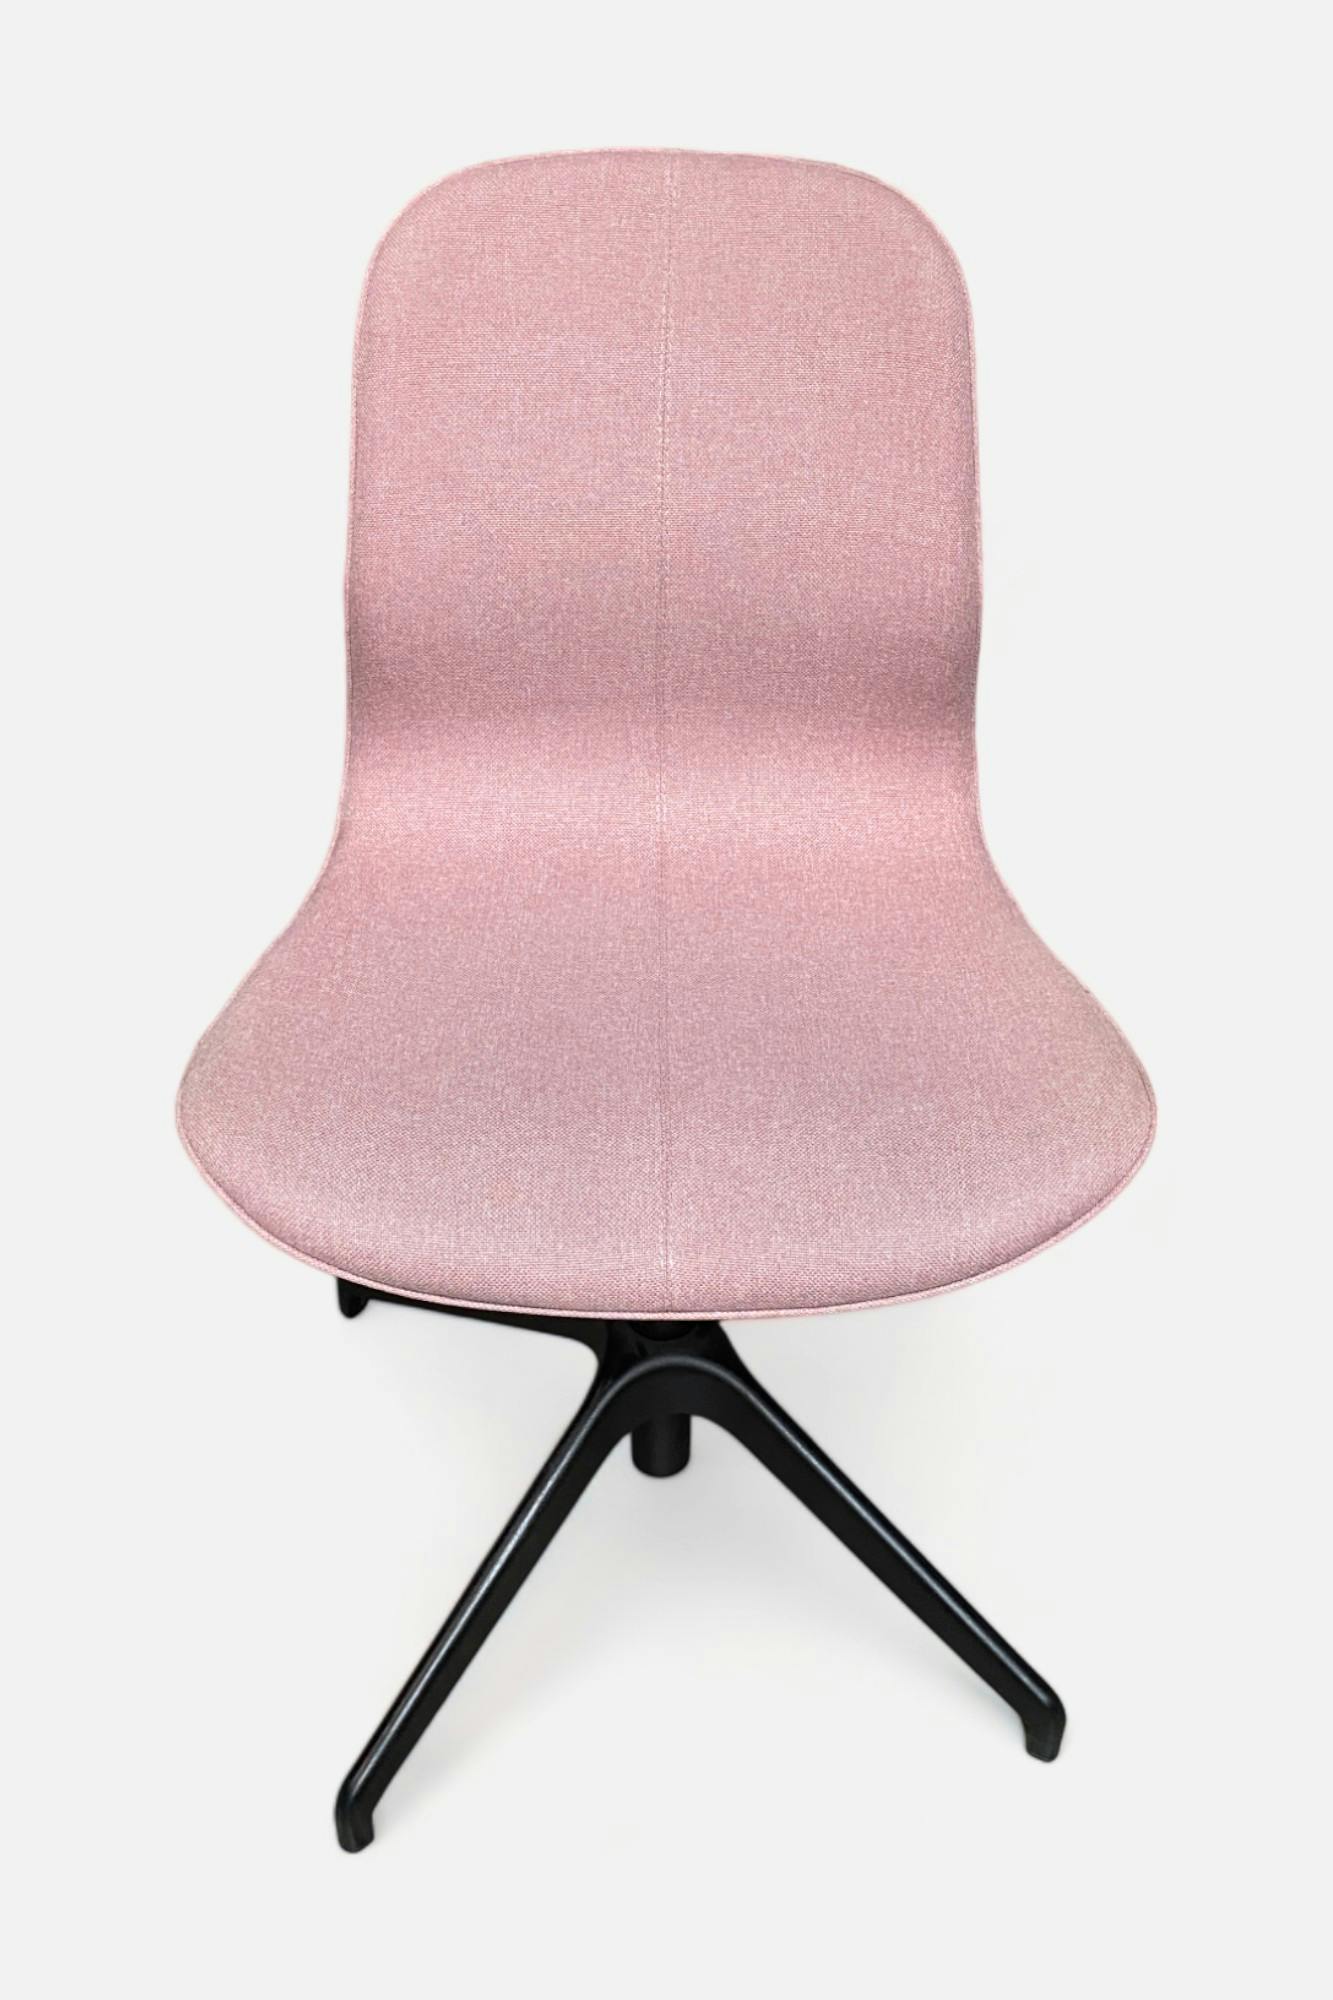 Chaise de réunion rose pâle sur pieds noirs - Relieve Furniture